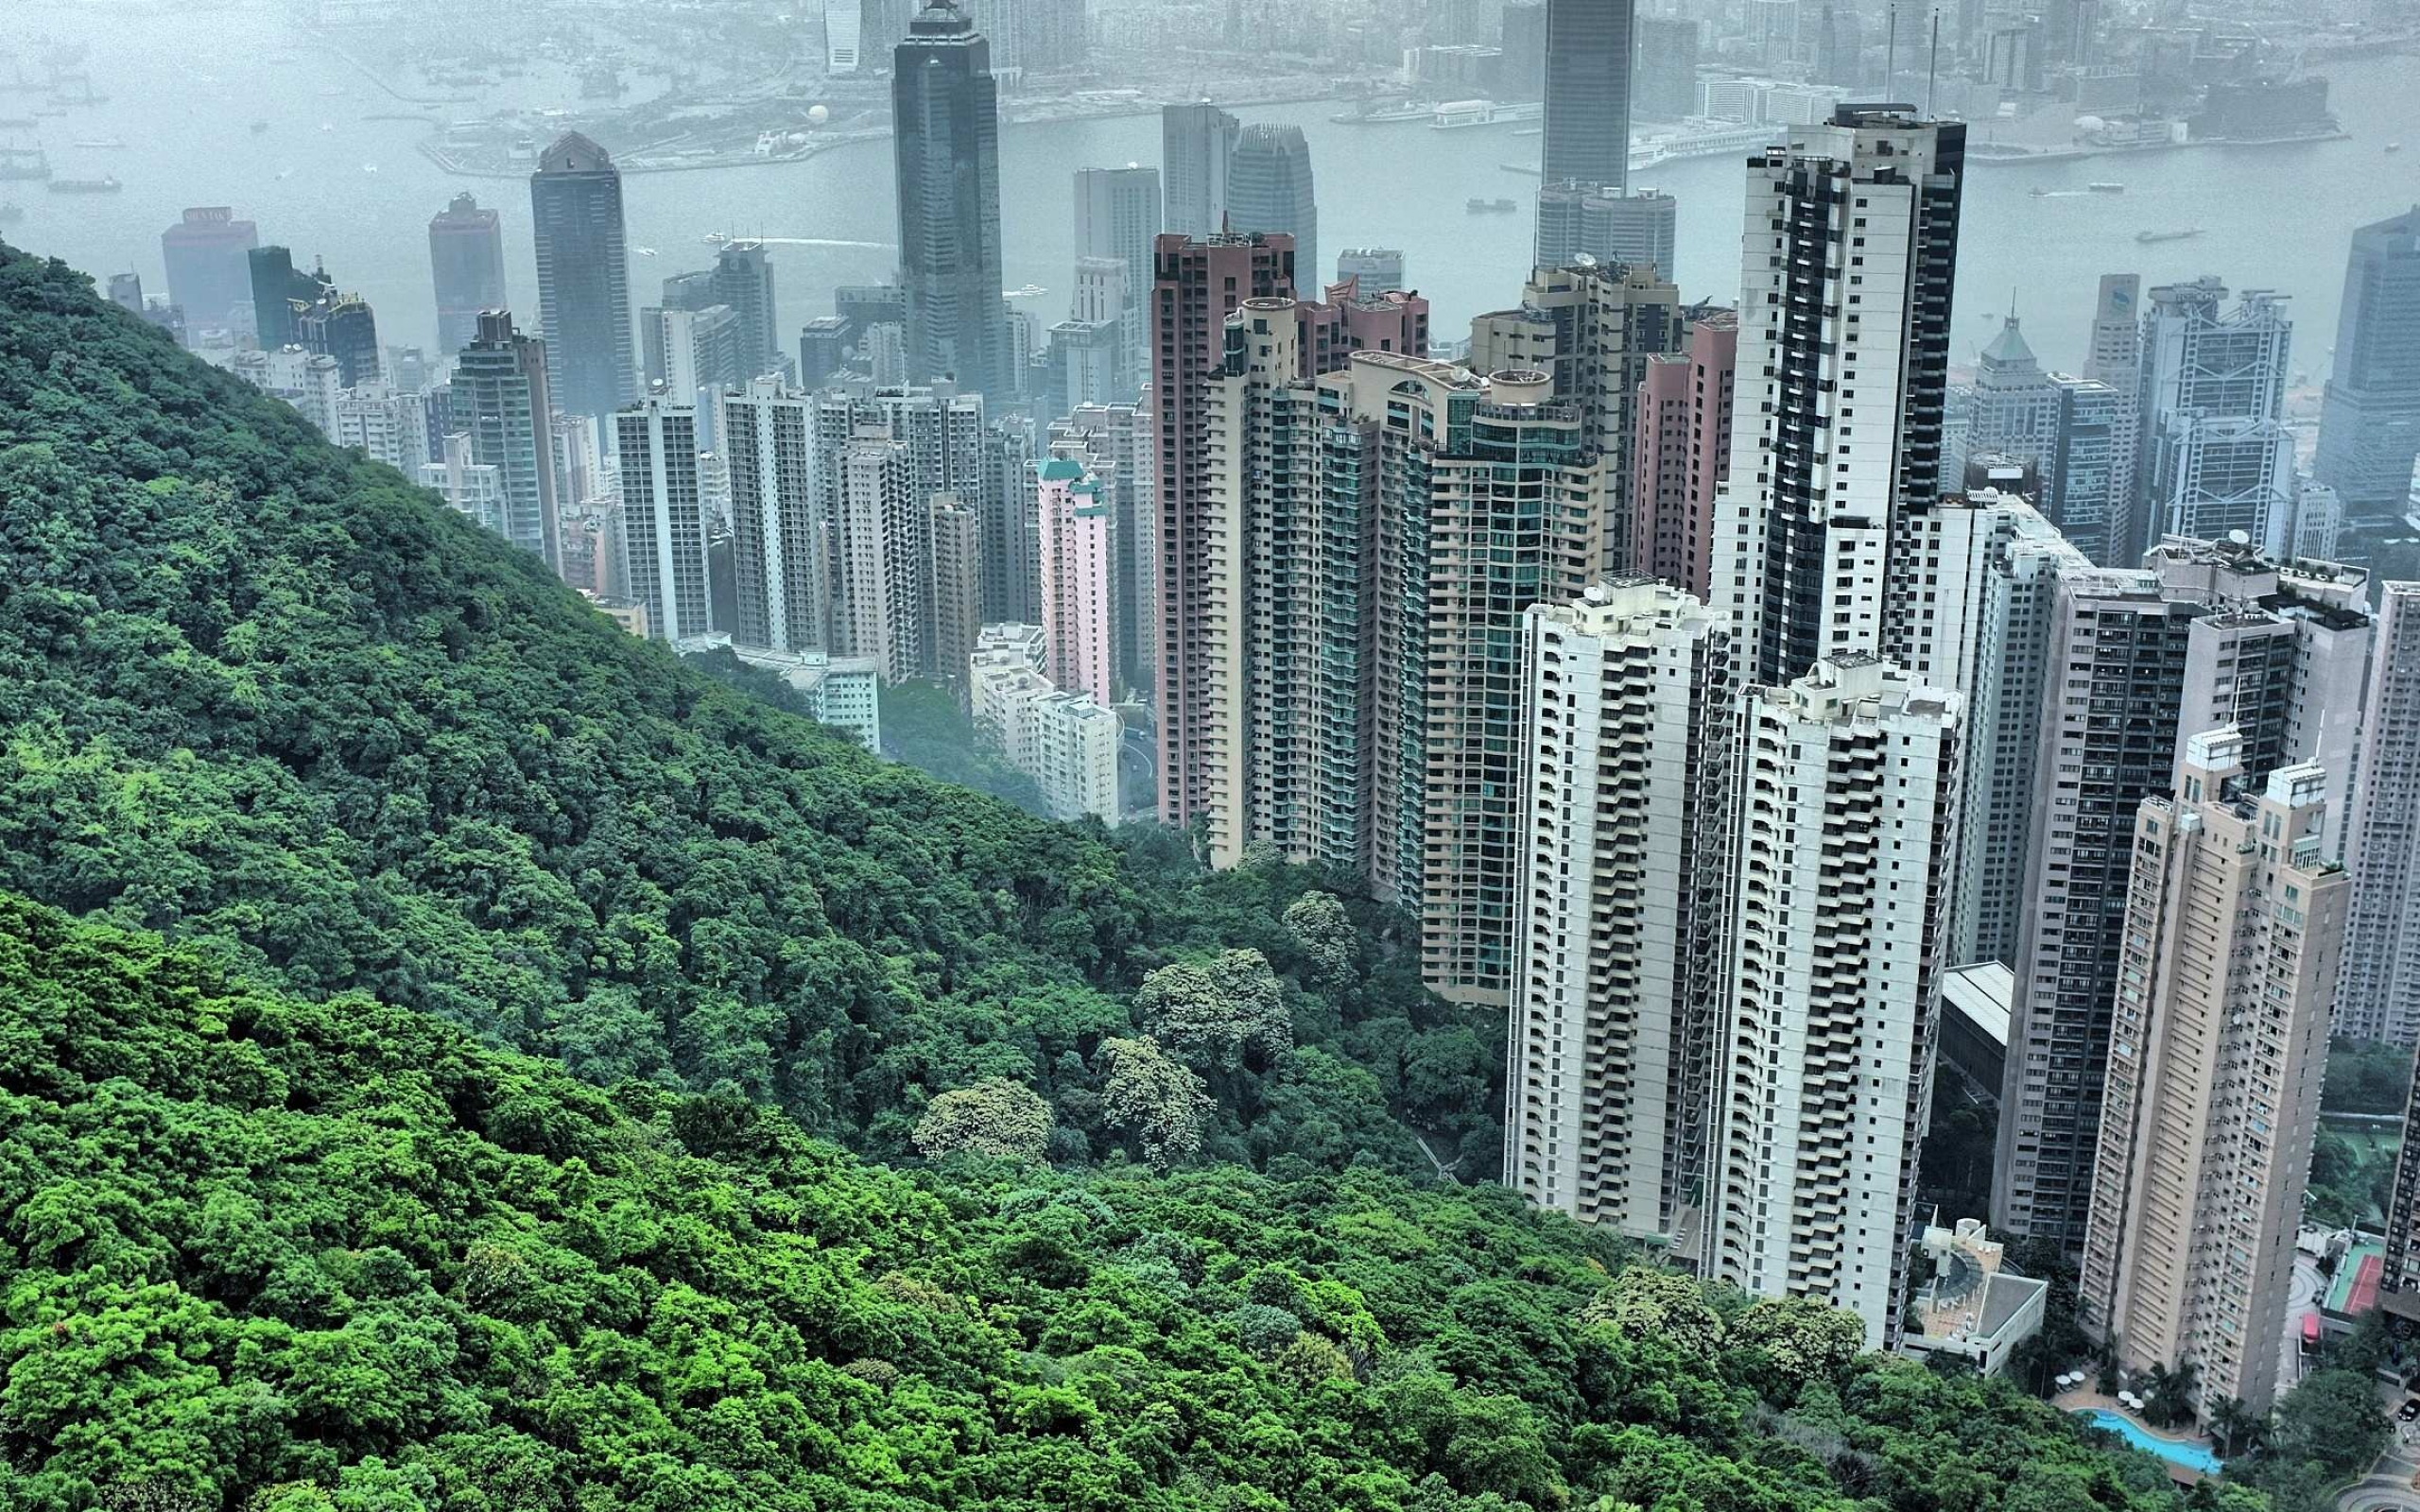 Hong Kong, Desktop wallpapers, Desktop backgrounds, 2560x1600 HD Desktop